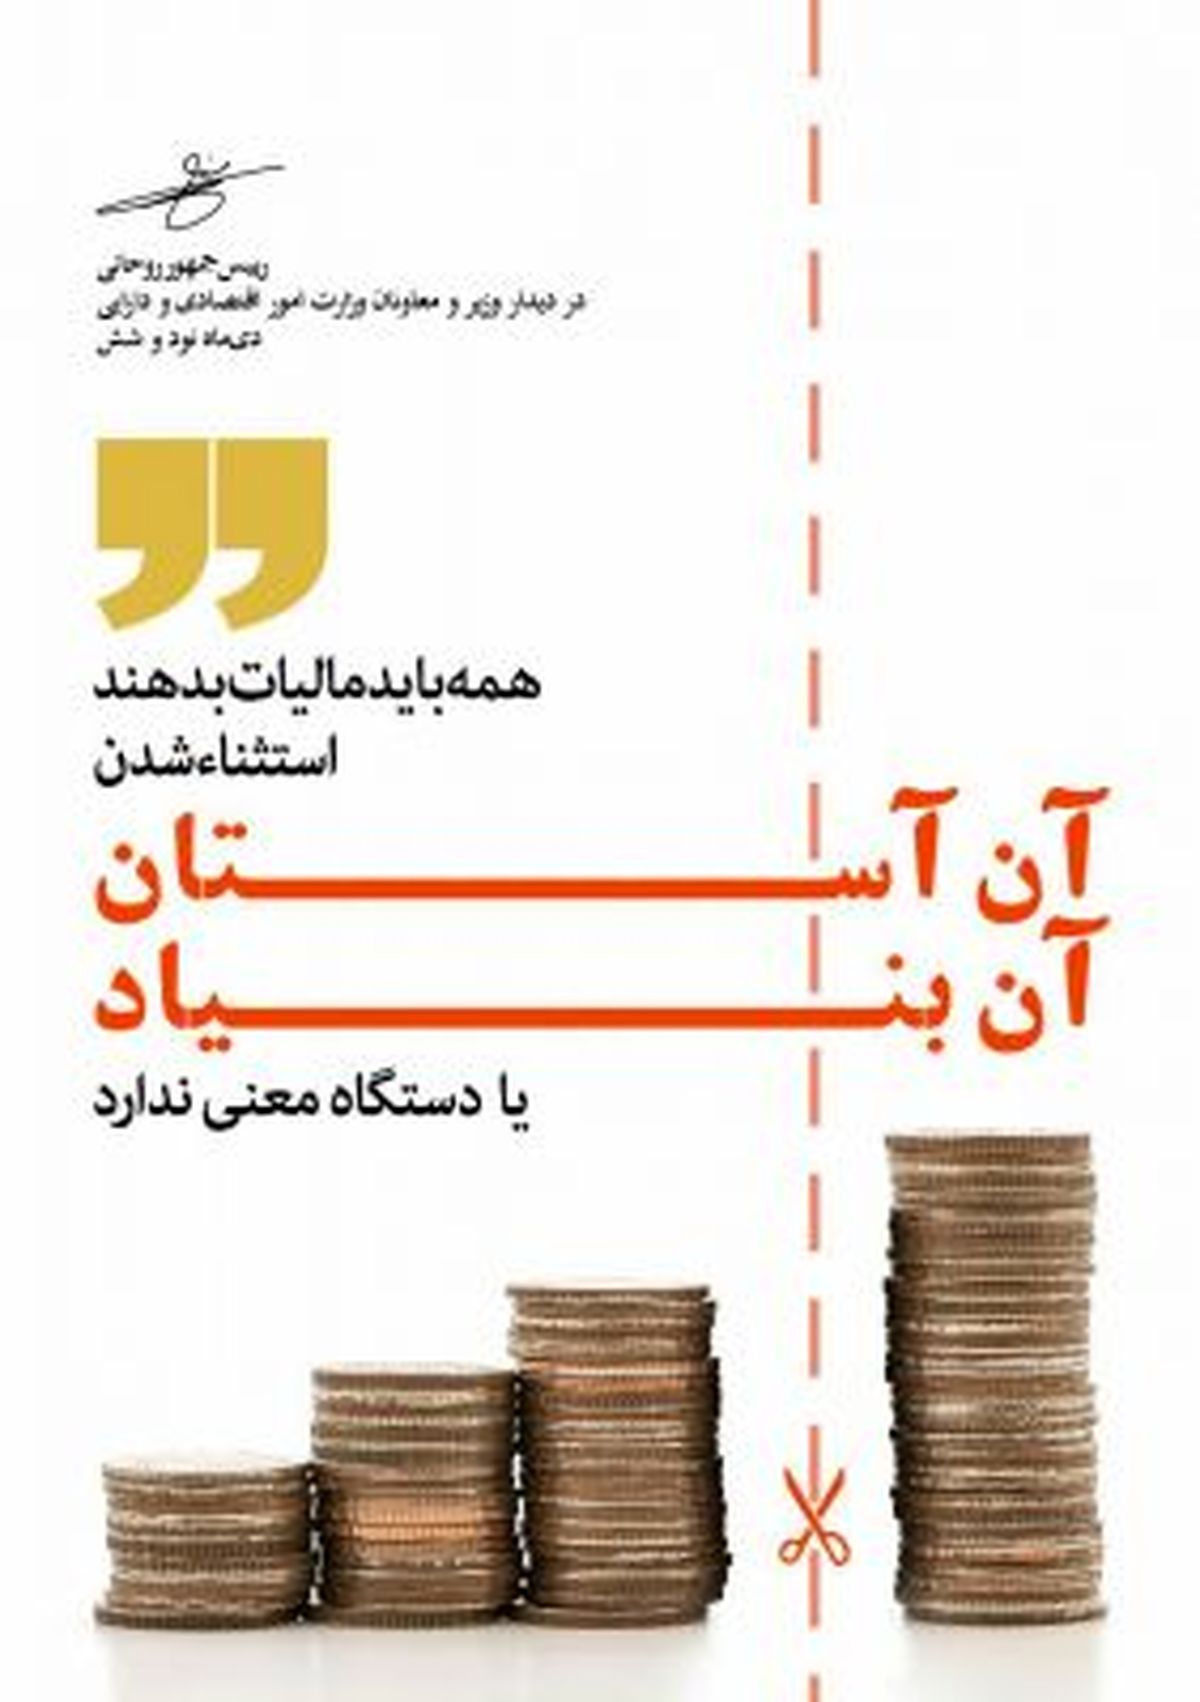 روحانی:همه باید مالیات دهند/آن آستان آن بنیاد نداریم